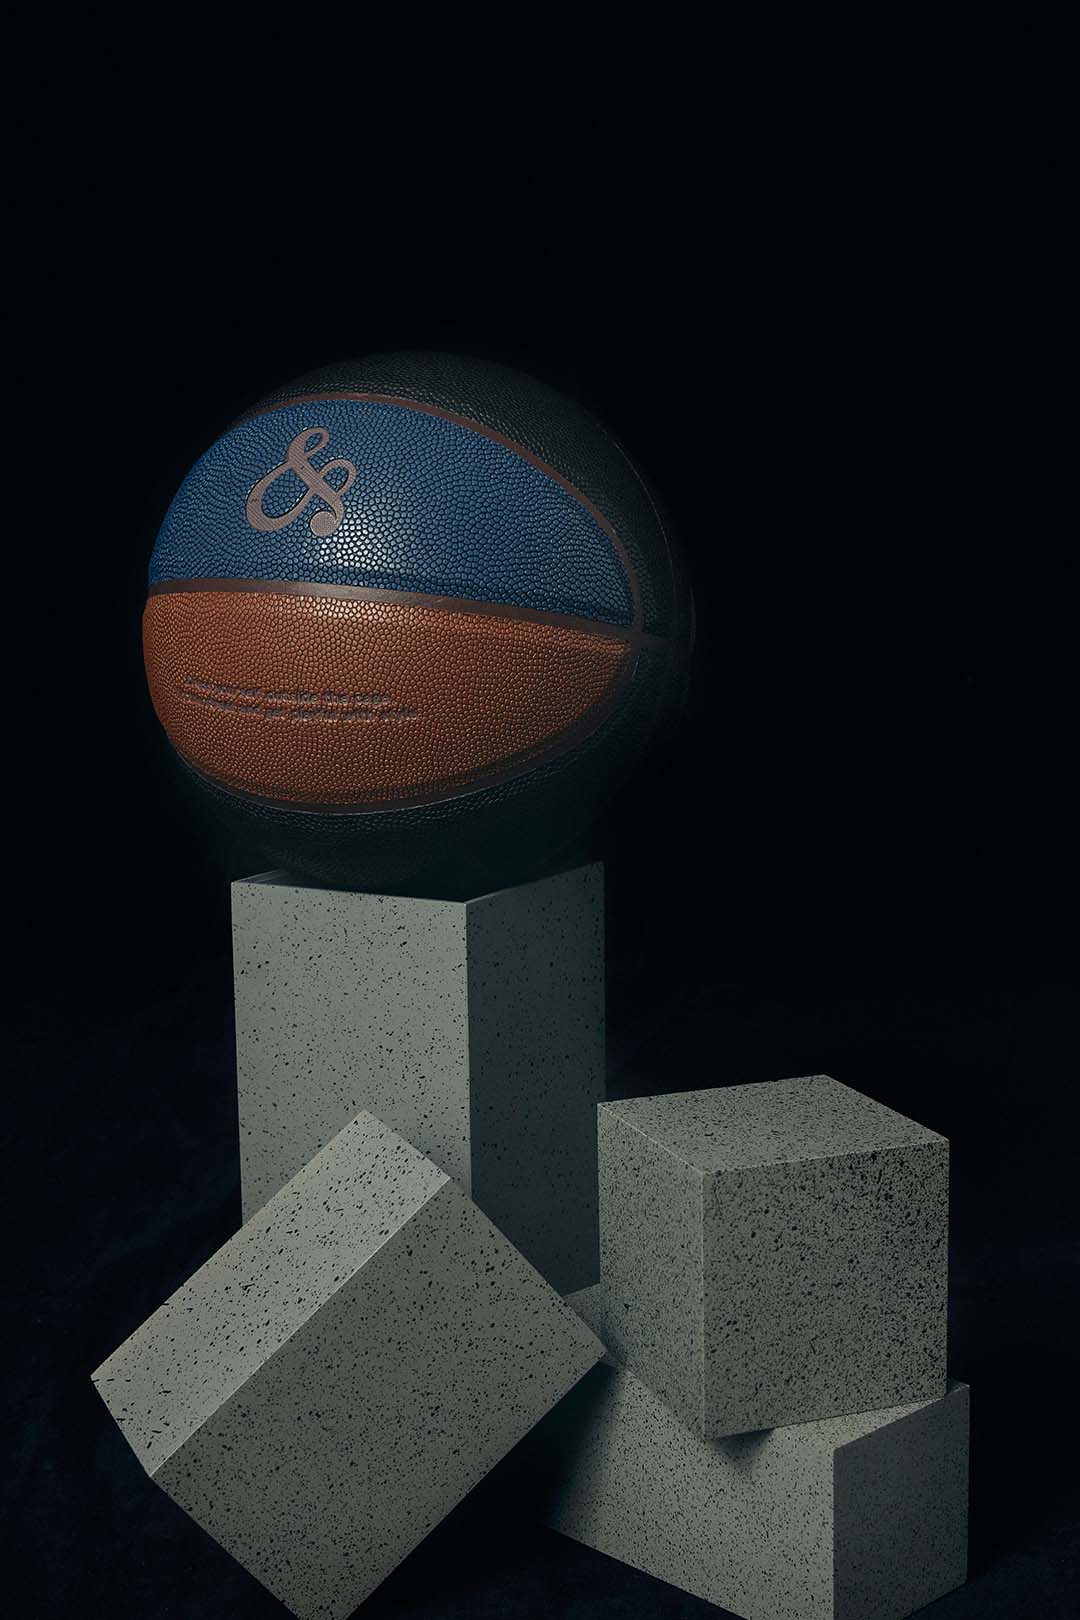 &RSONバスケットボール | www.crf.org.br